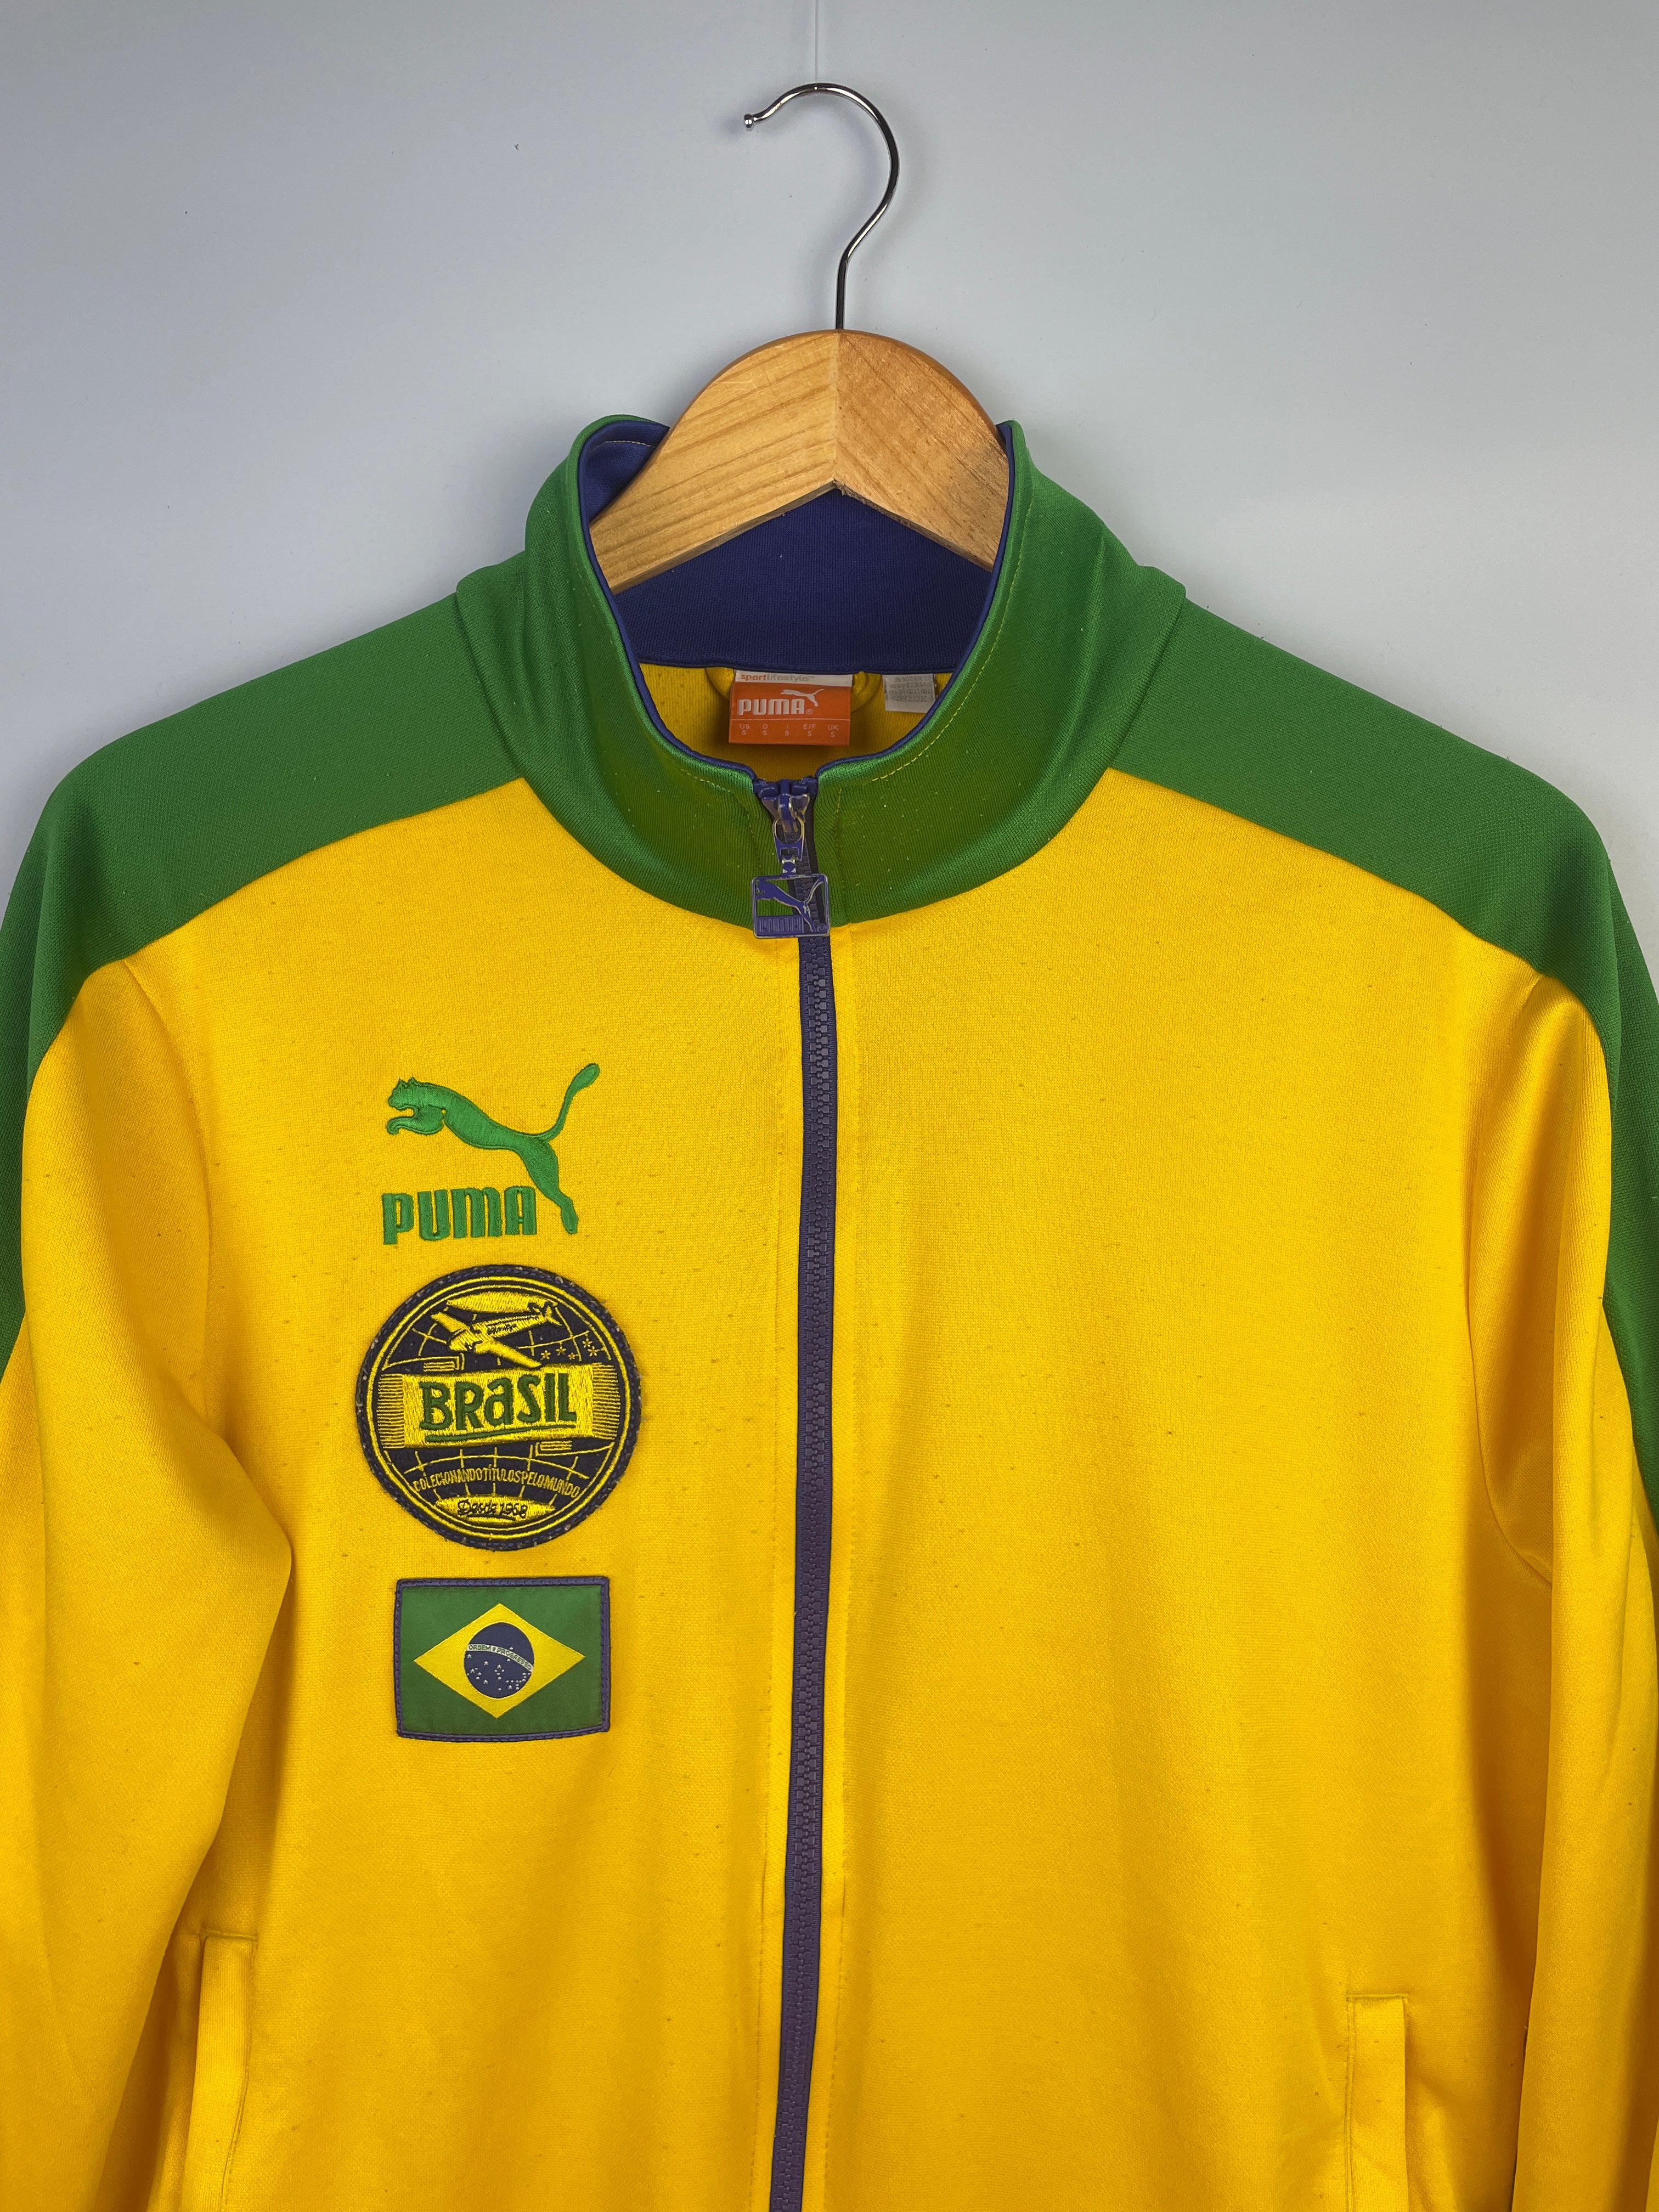 S Brasilien vintage puma Sportjacke